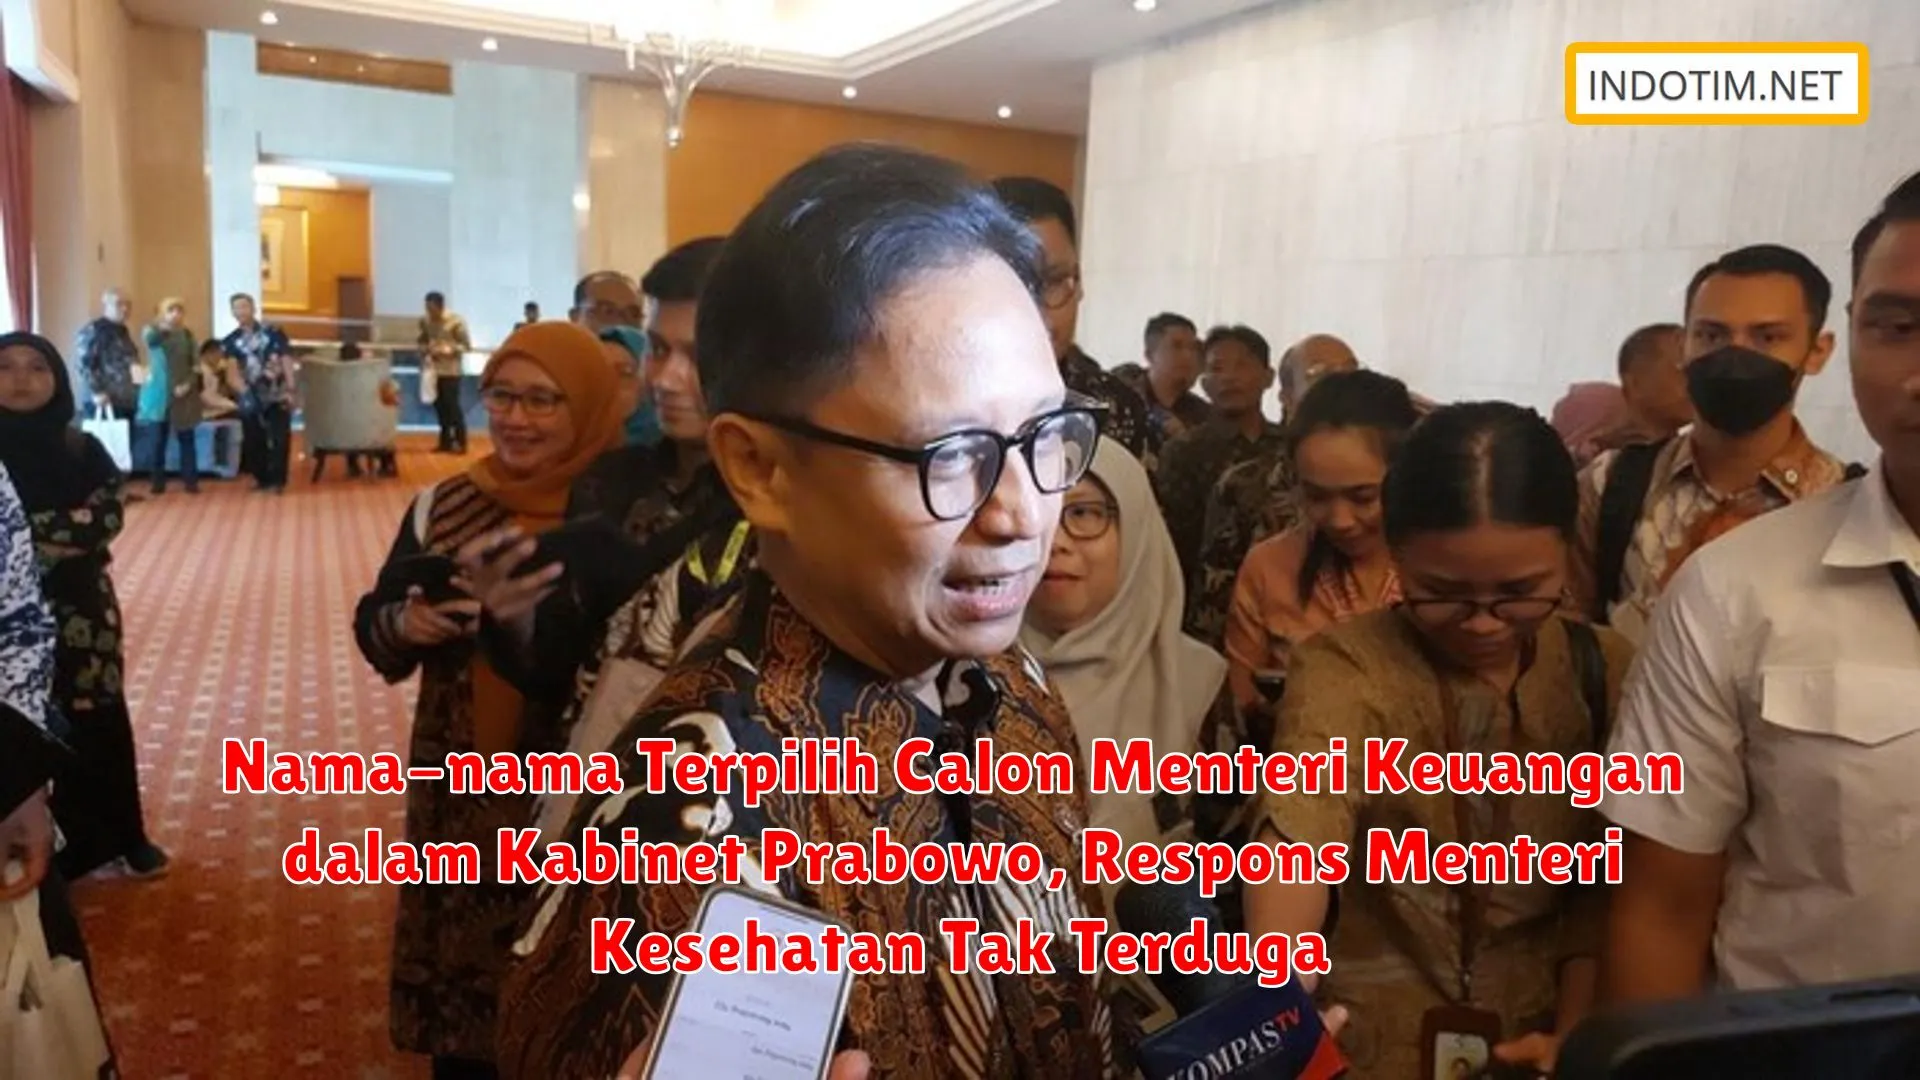 Nama-nama Terpilih Calon Menteri Keuangan dalam Kabinet Prabowo, Respons Menteri Kesehatan Tak Terduga